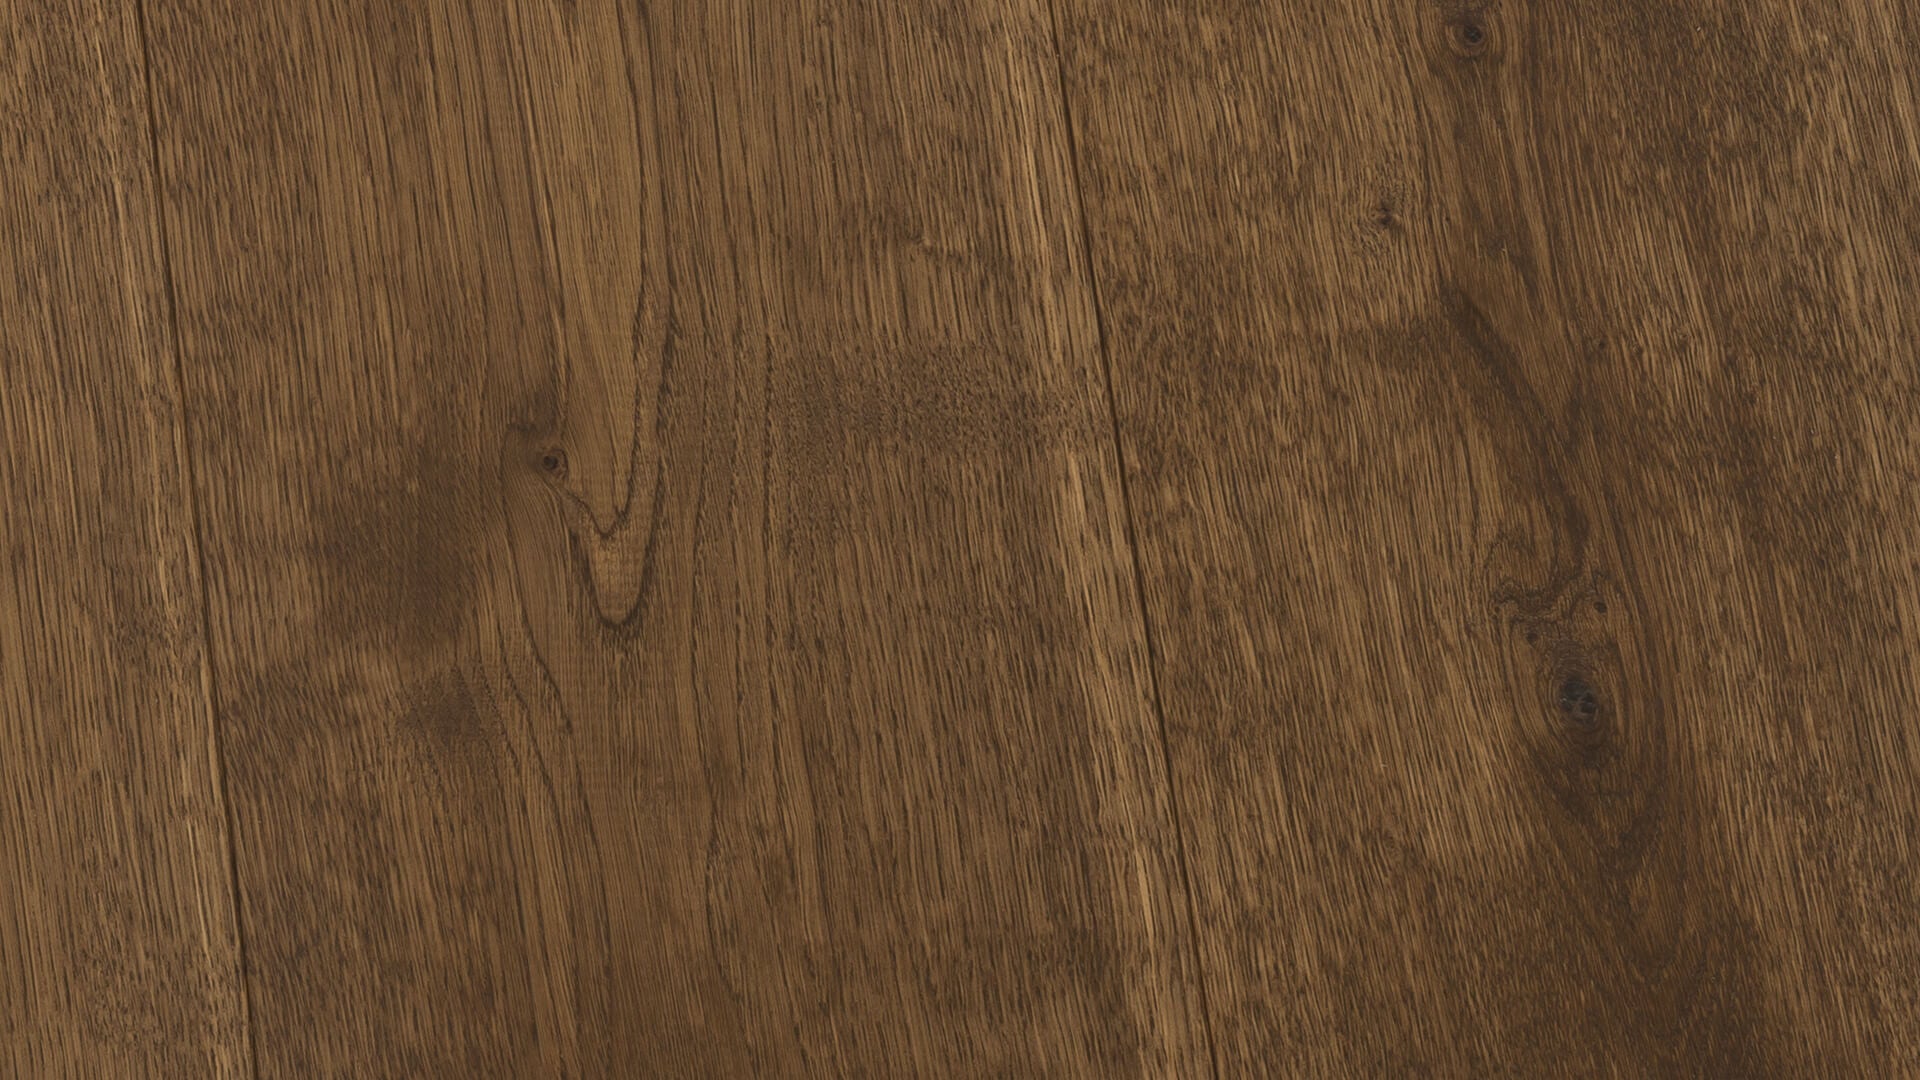 Eikenhouten vloer van Uipkes in kleur oriëntaal bruin